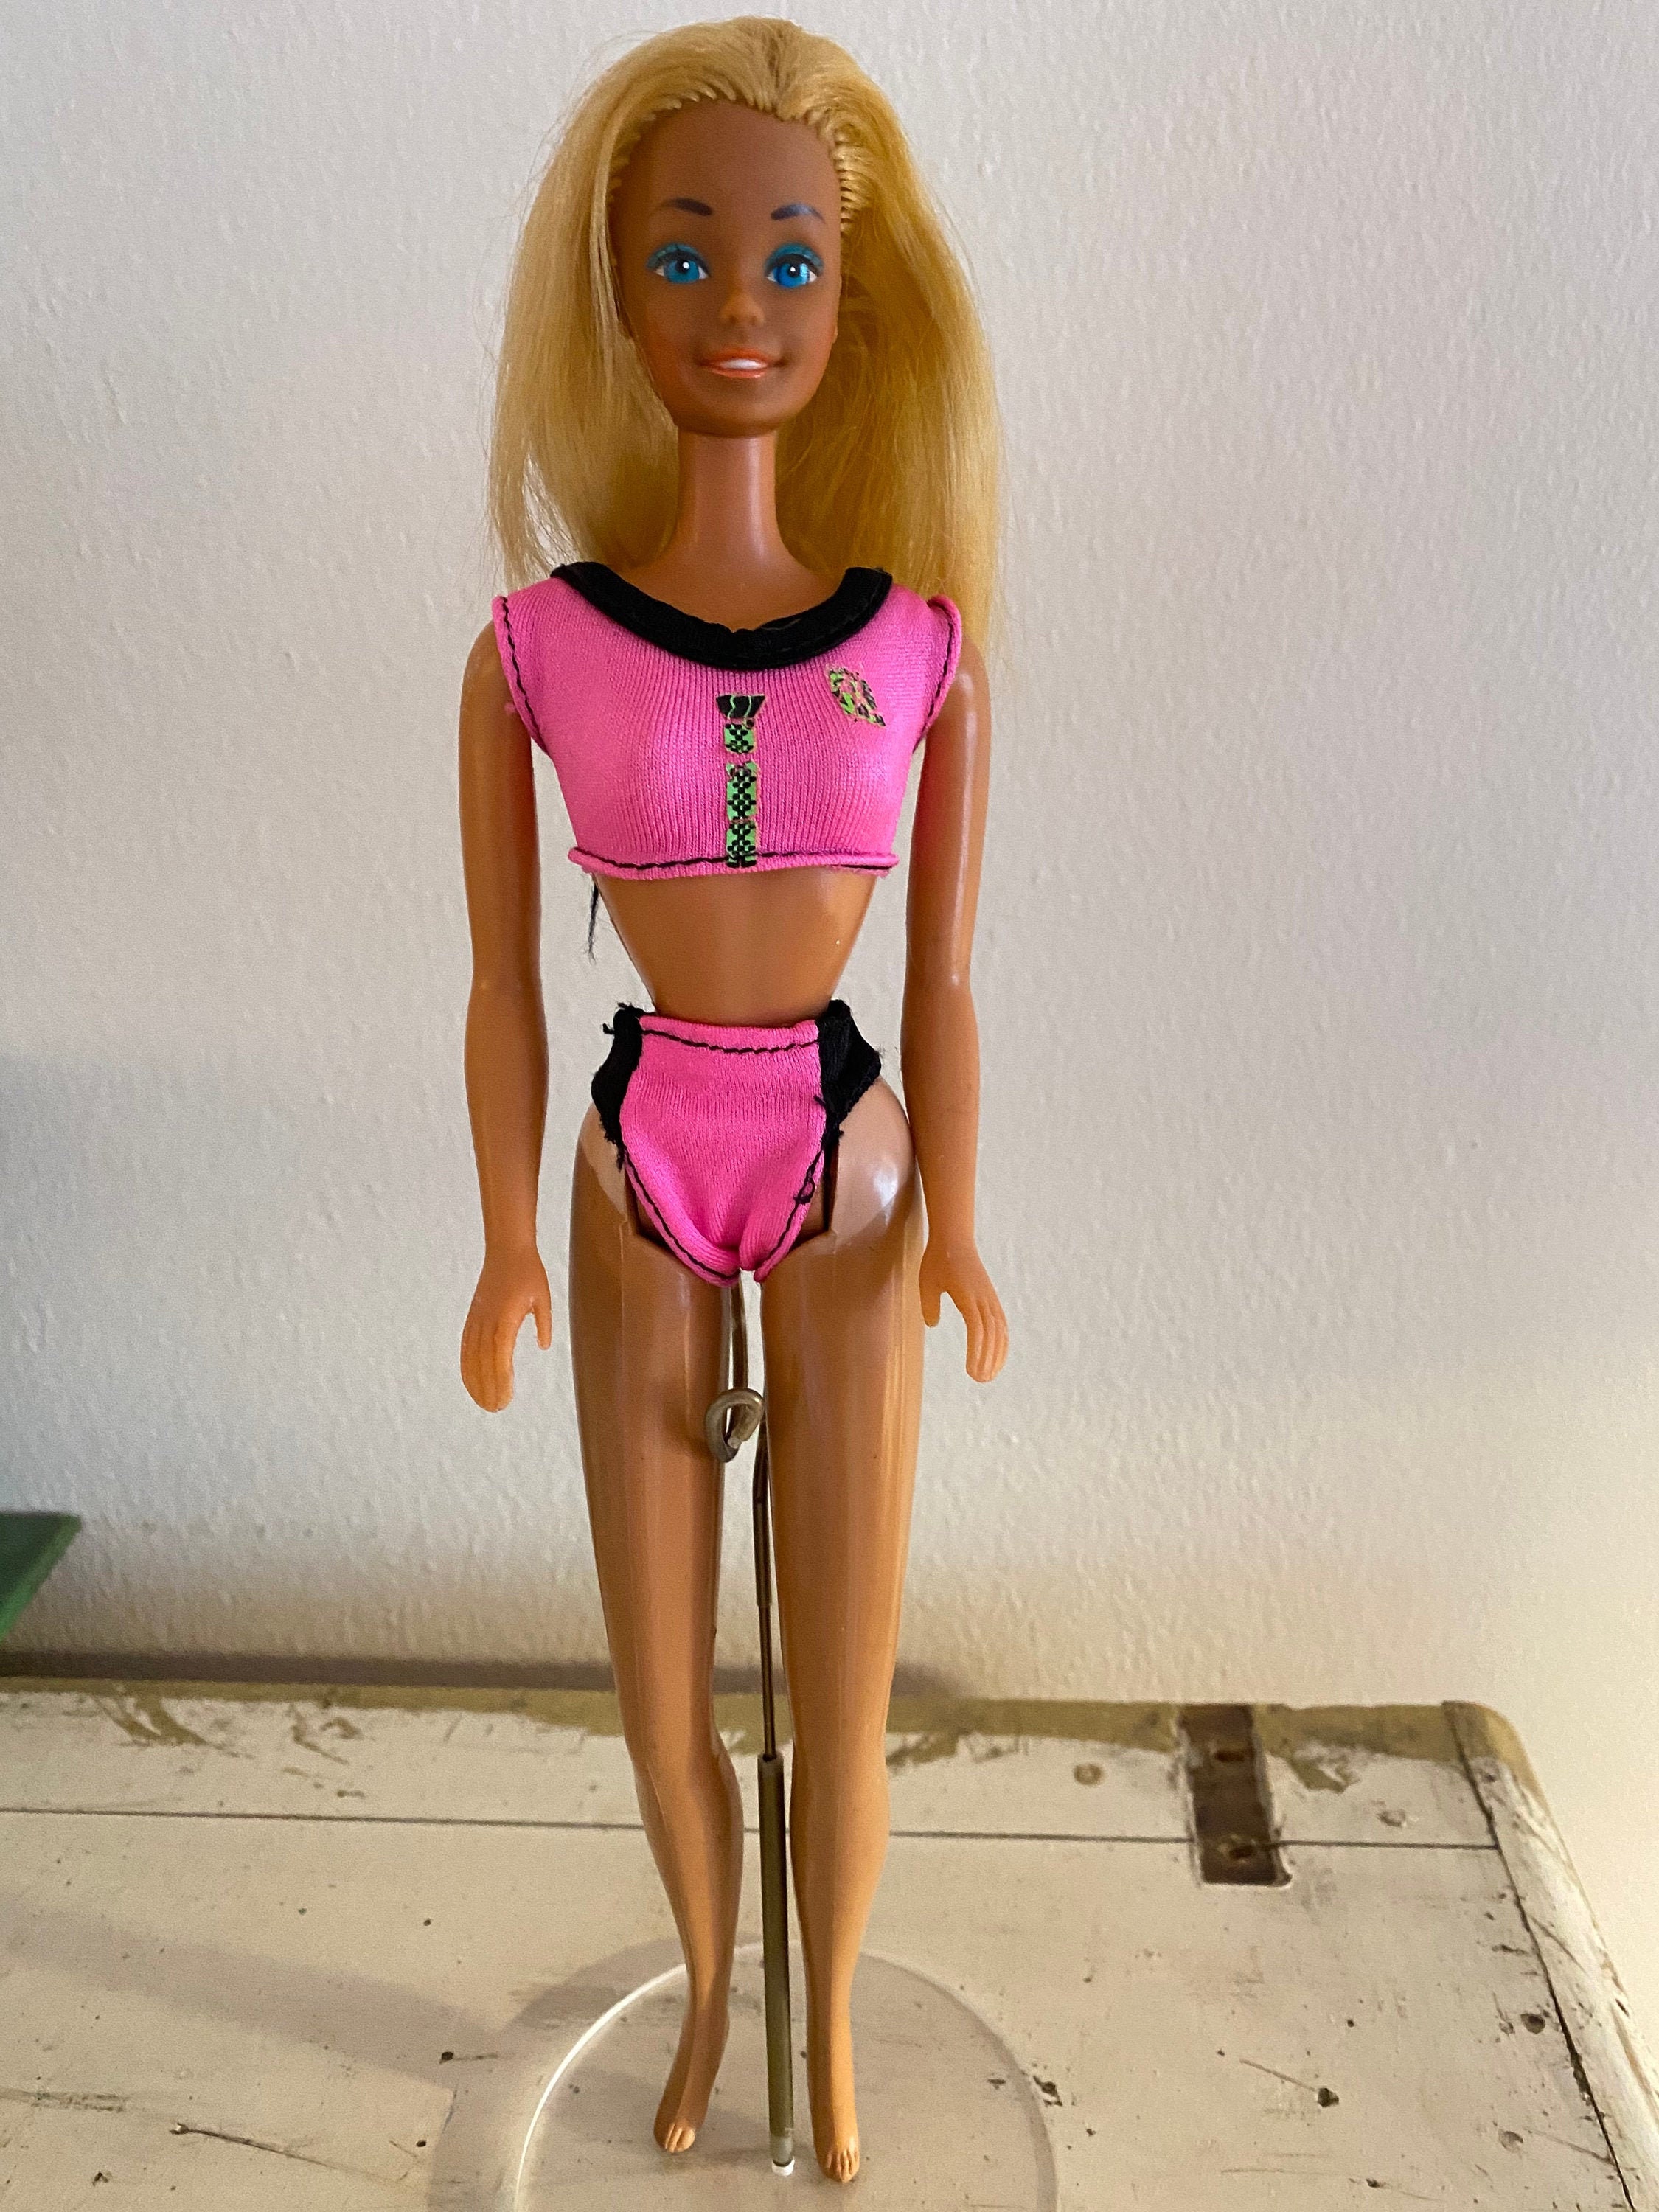 Dolls Action Figures Toys Games Vintage Barbie Doll Vint Doll Gift